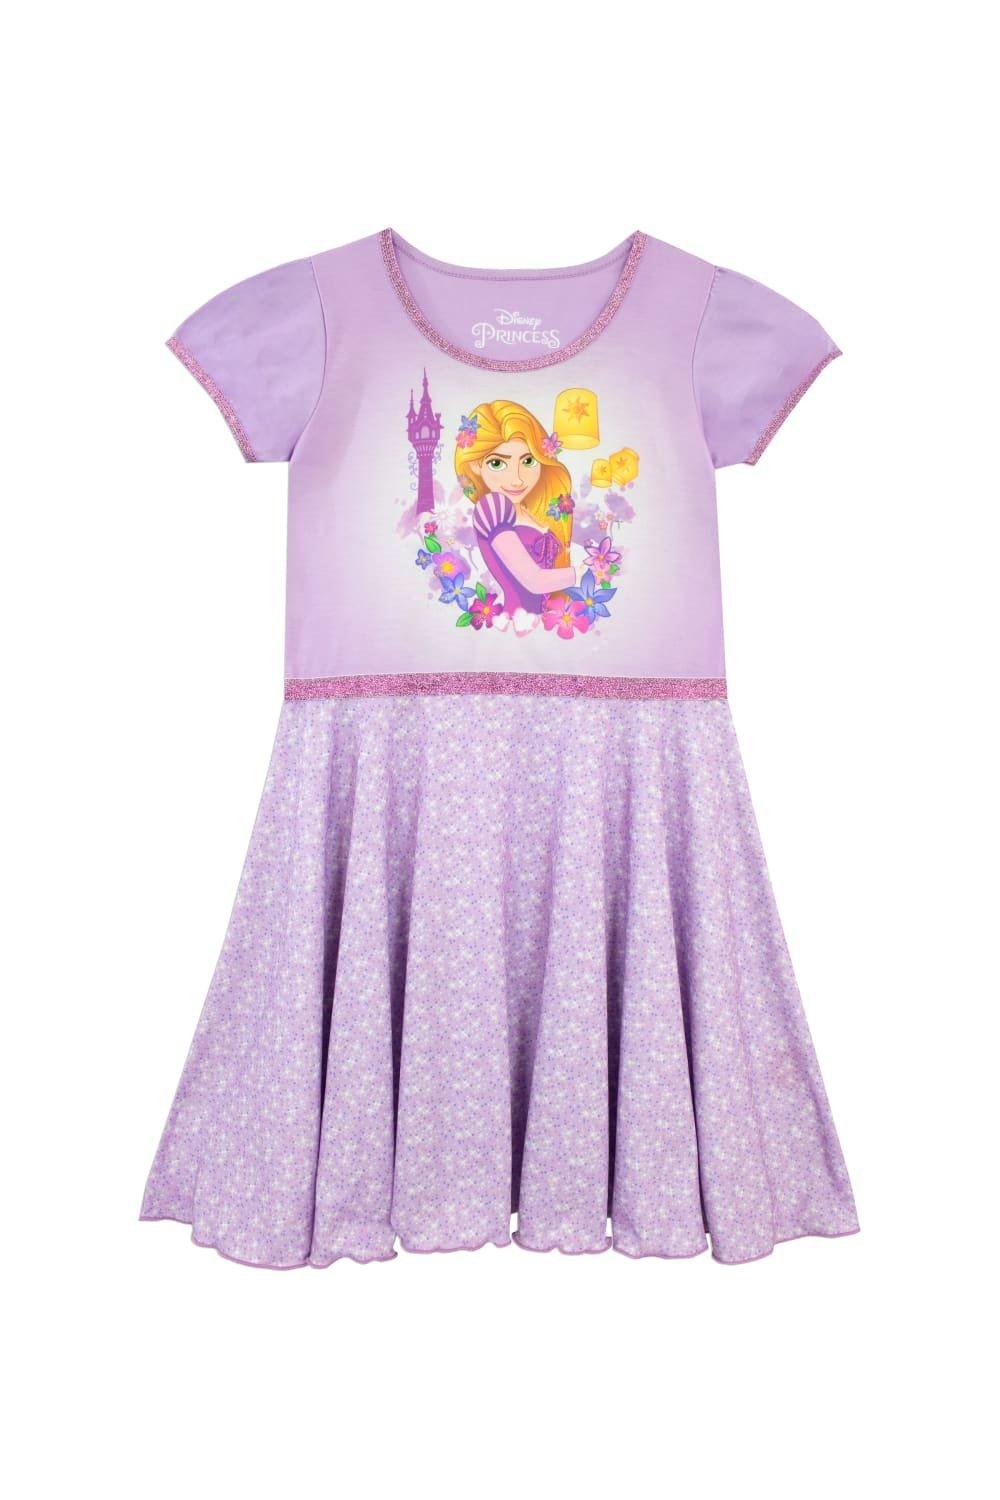 Ночная рубашка Рапунцель: Запутанная история Disney, фиолетовый